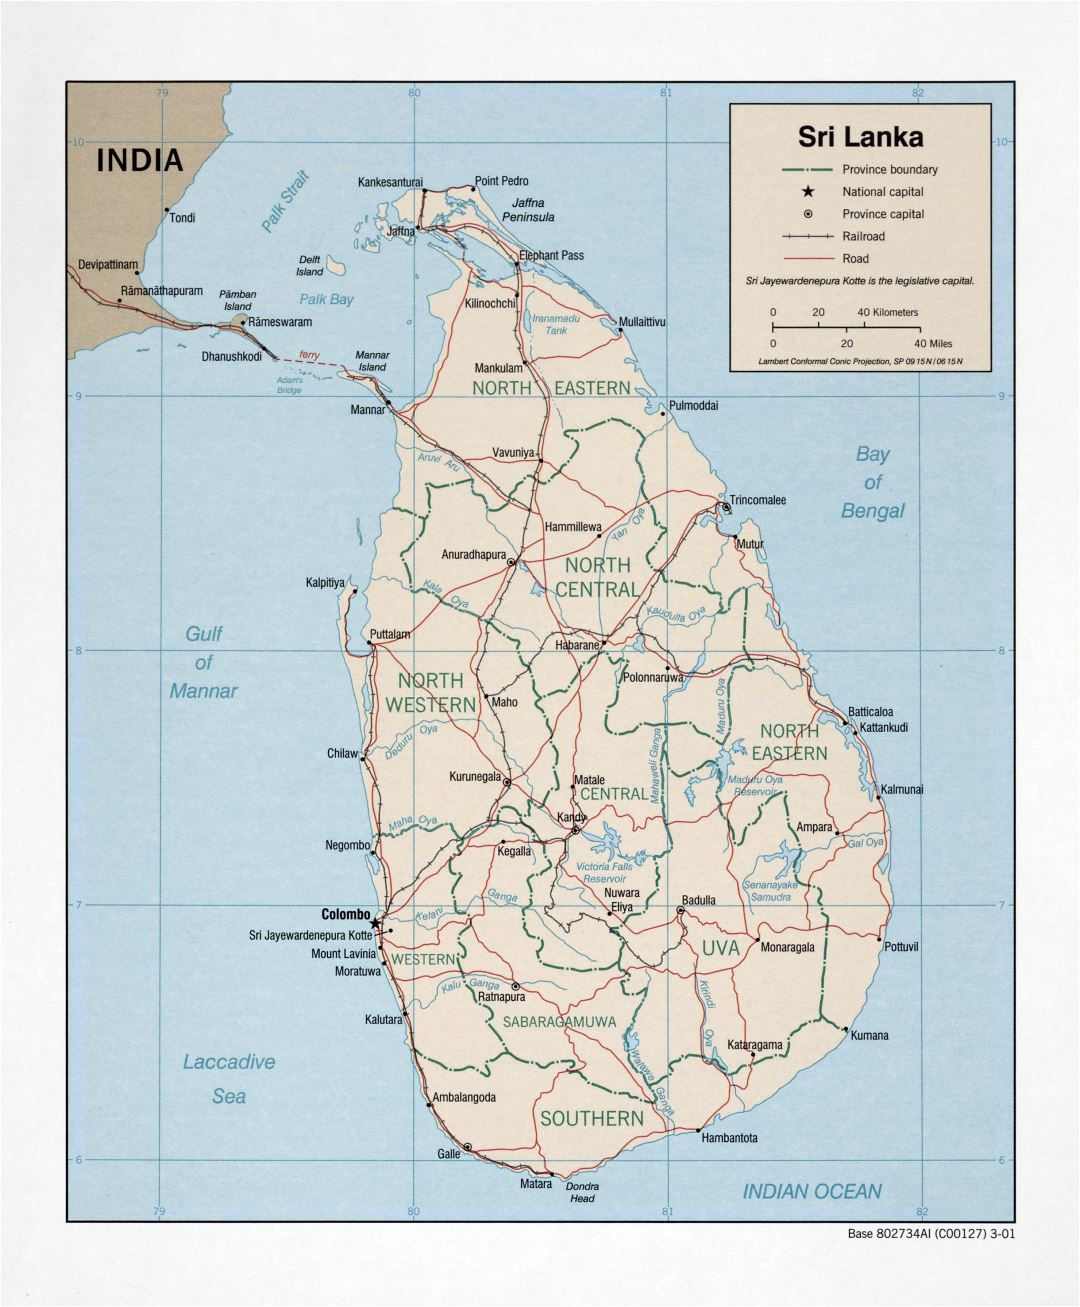 Grande detallado mapa político y administrativo de Sri Lanka con carreteras, ferrocarriles y principales ciudades - 2001